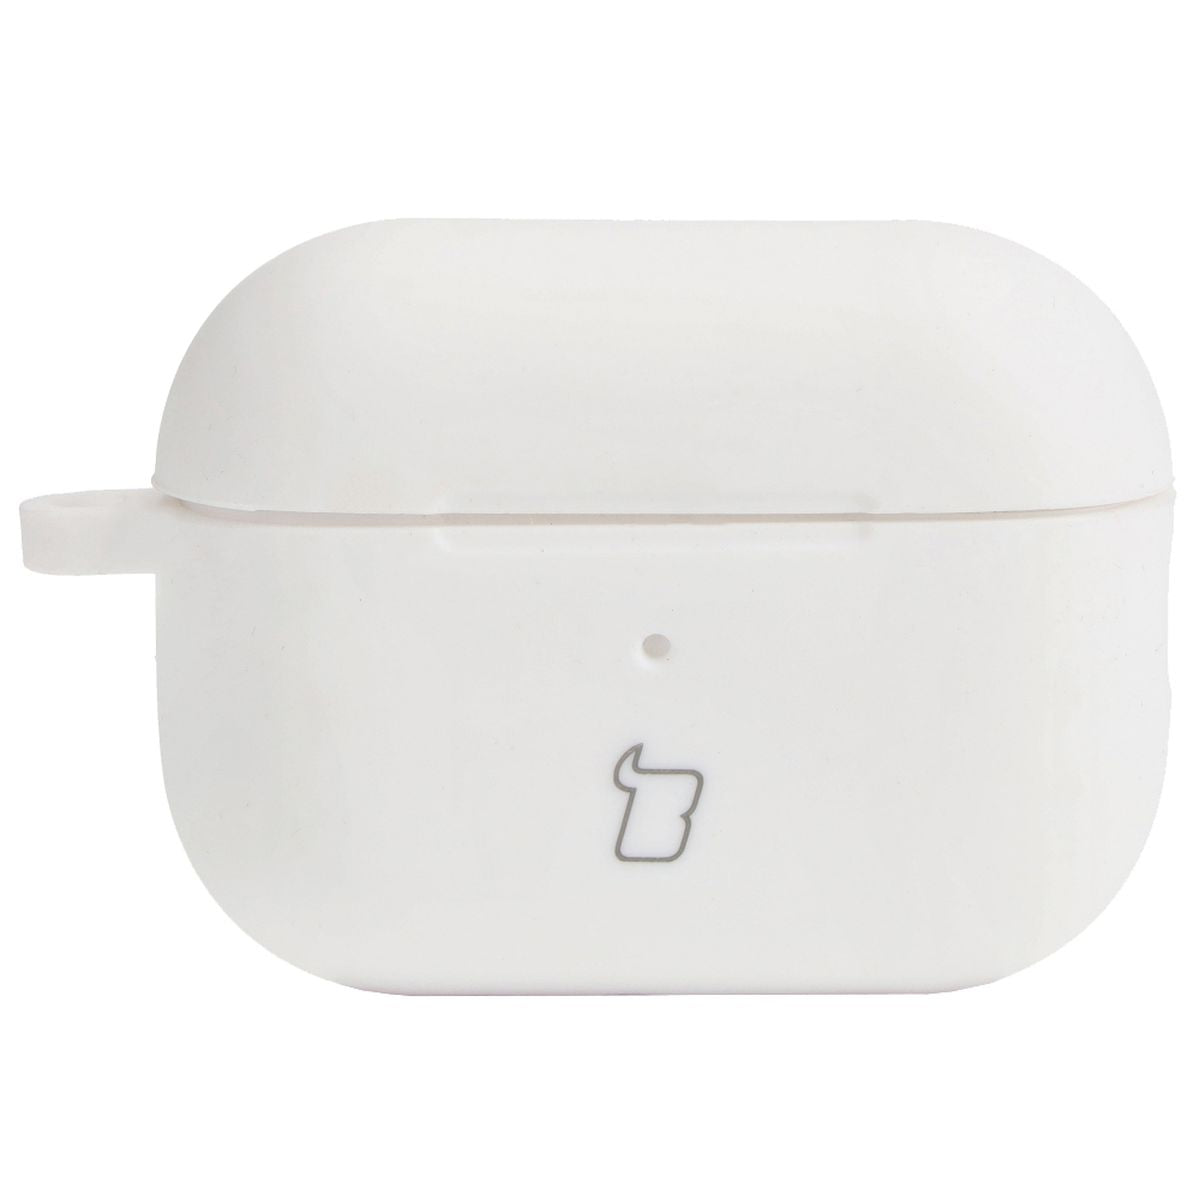 Schutzhülle für AirPods Pro 2, Bizon Case Headphone Silicone, Weiß